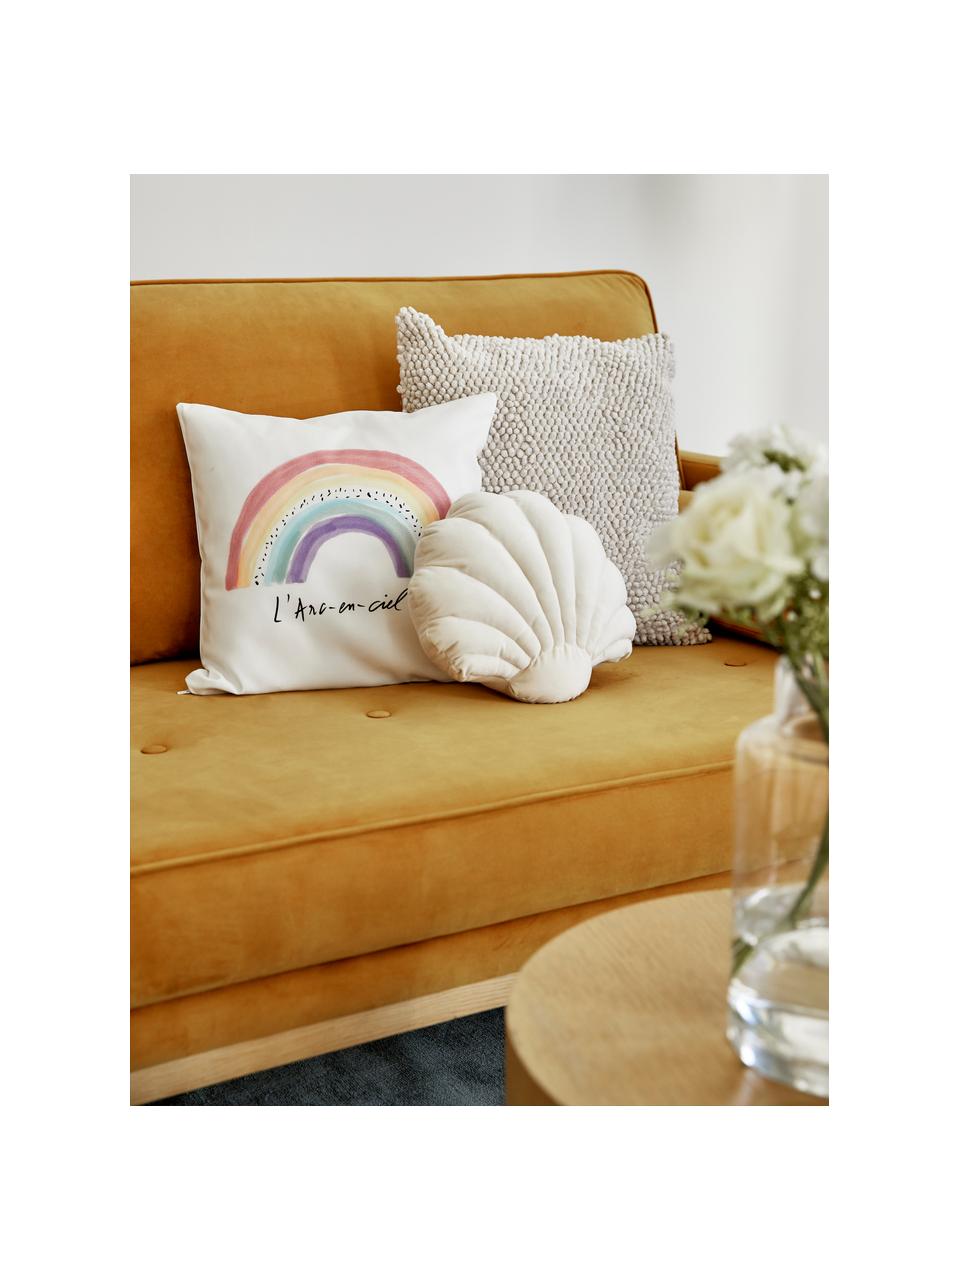 Housse de coussin 40x40 design Rainbow von Kera Till, Blanc, multicolore